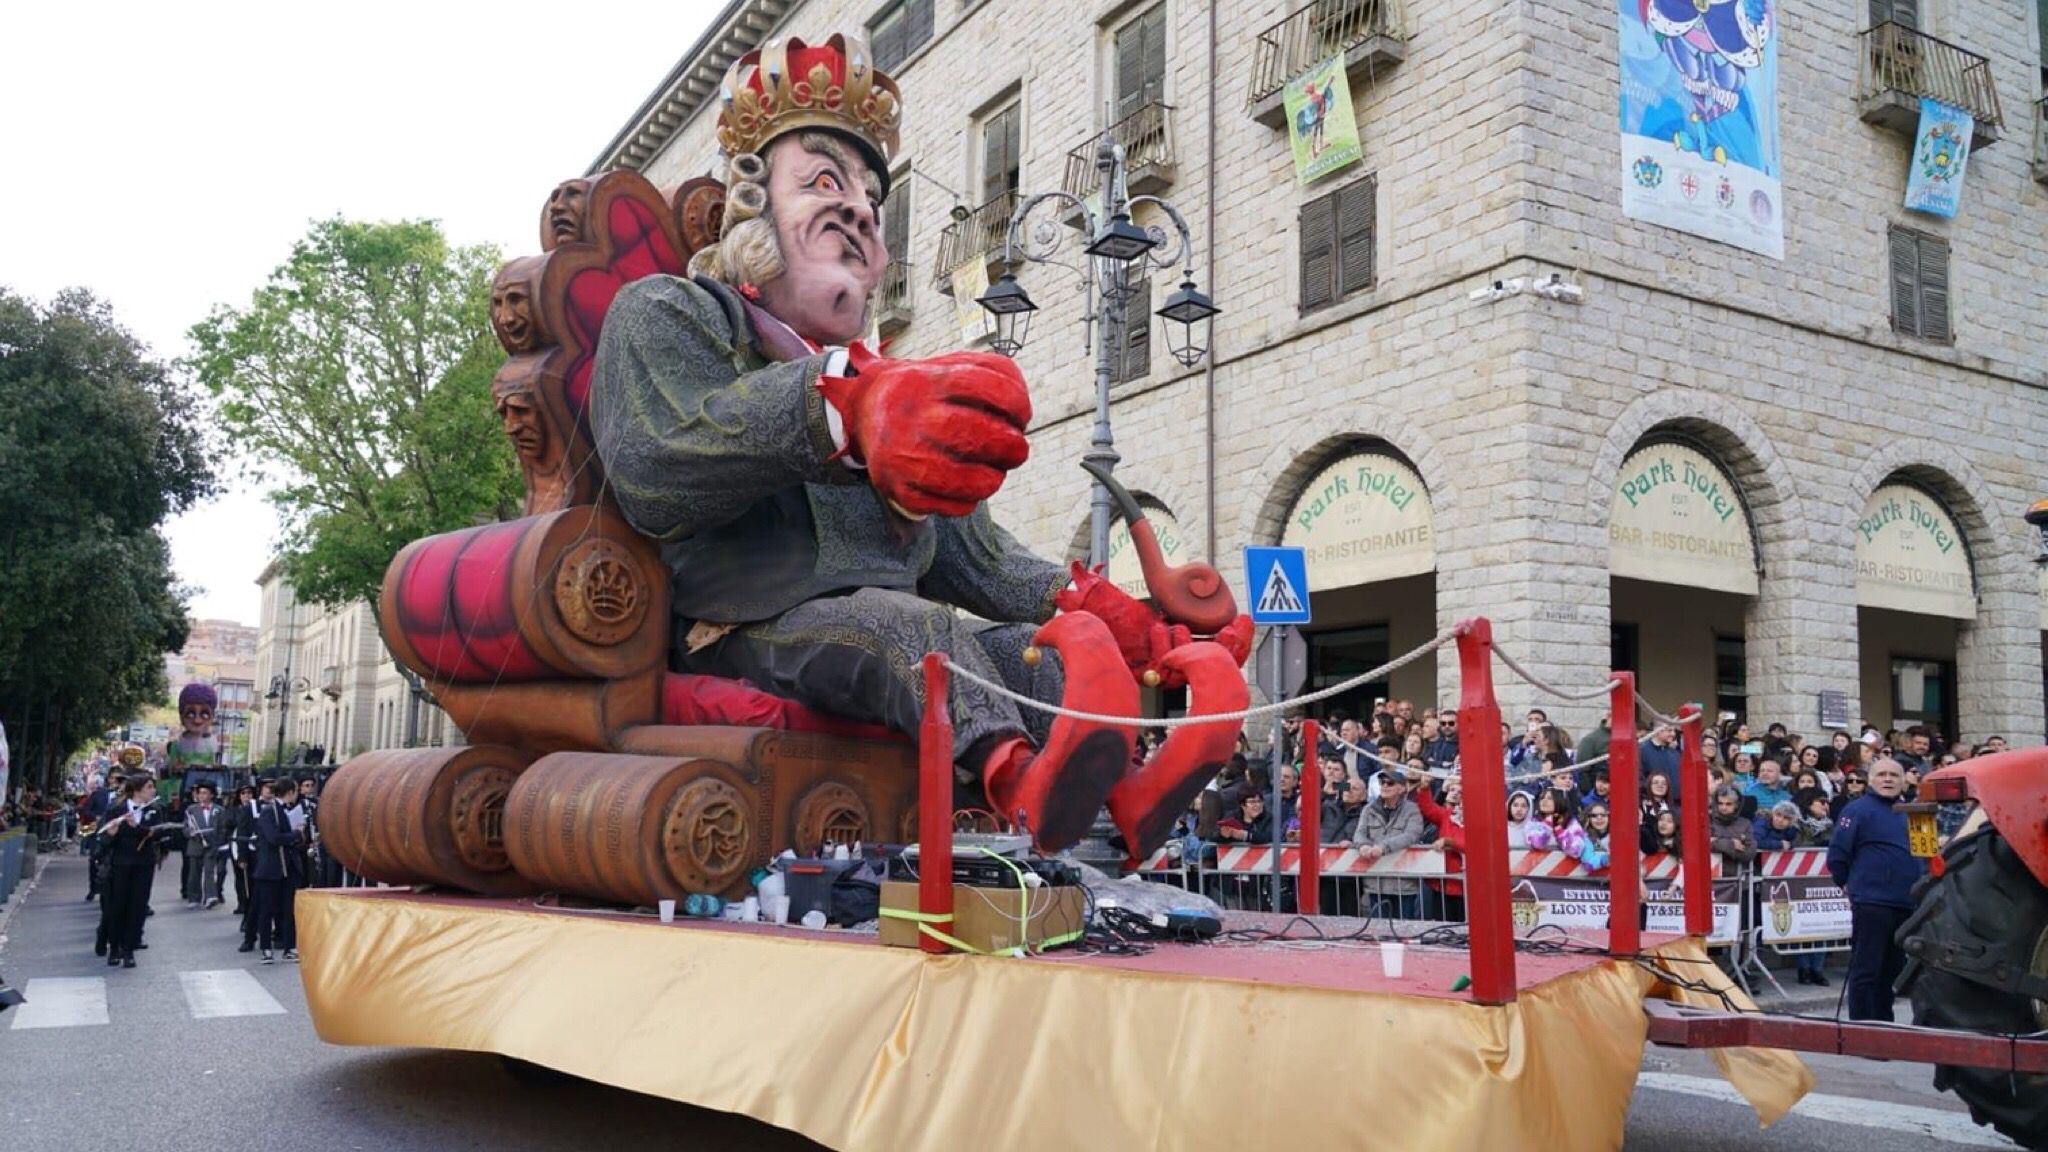 Carnevale Tempio, domani la prima sfilata: ultimi lavori sui carri e via al divertimento